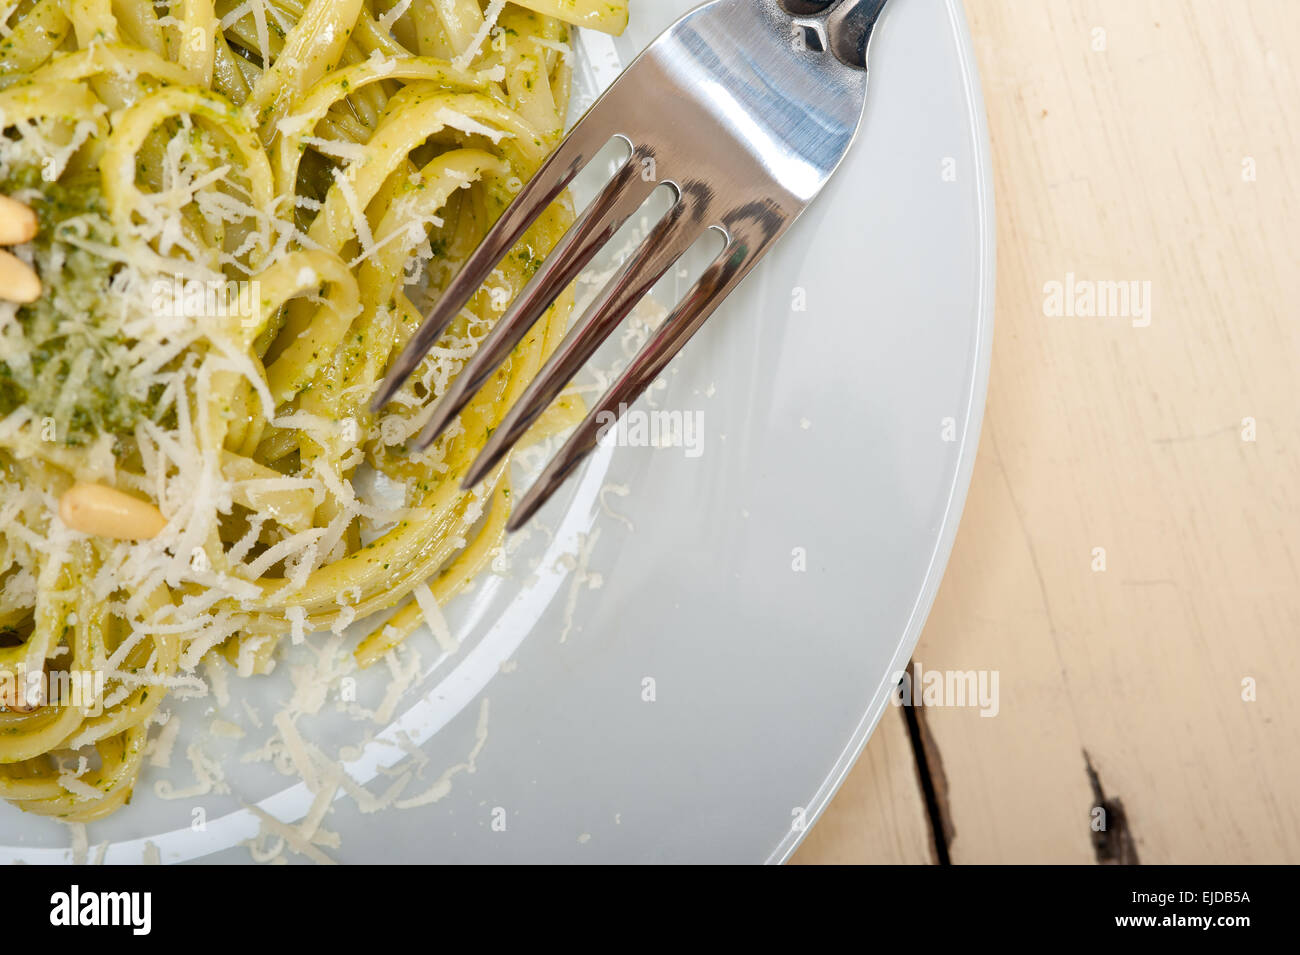 Pâtes au pesto de basilic traditionnel italien parmesan ingrédients noix de pin l'huile d'olive extra vierge ail sur une table rustique Banque D'Images